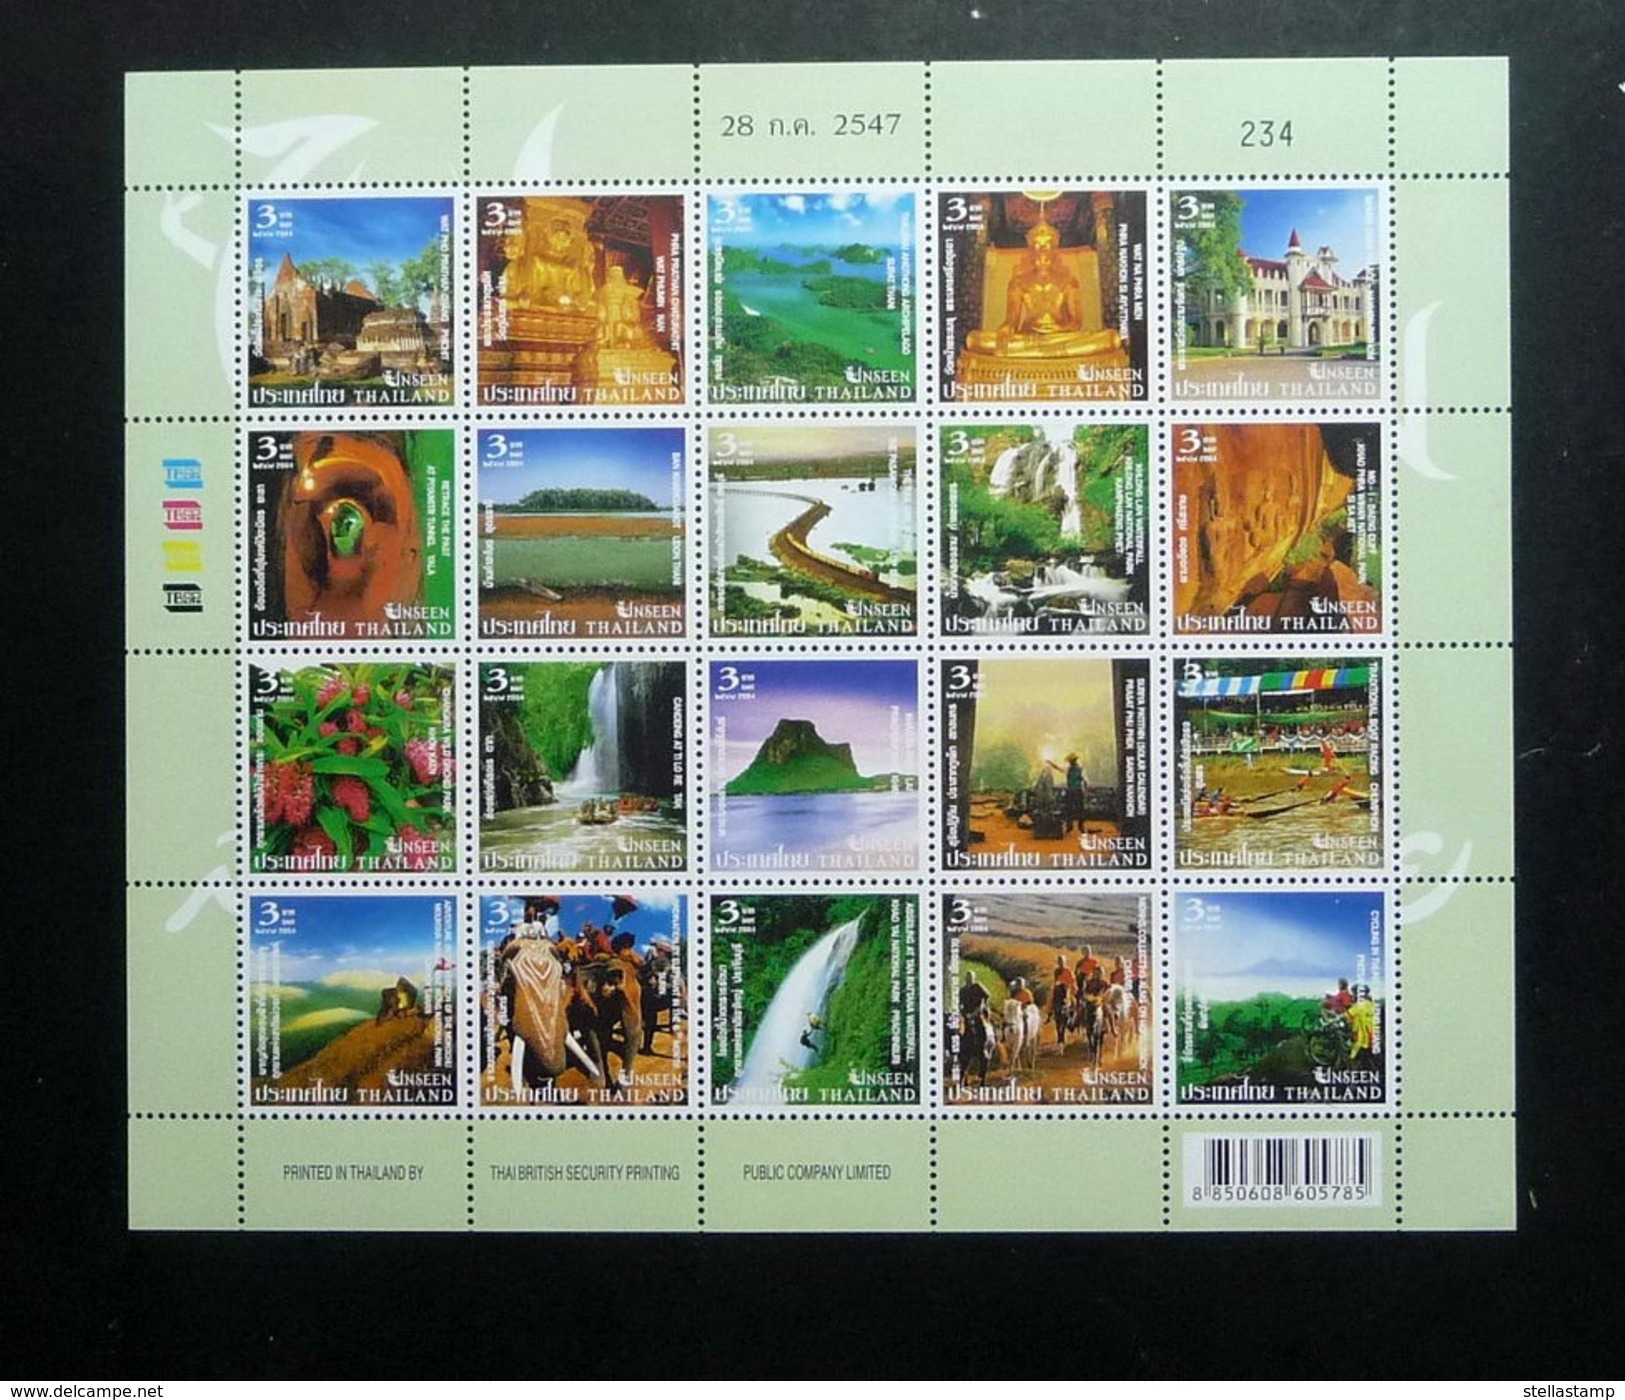 Thailand Stamp FS 2004 Unseen Thailand 2nd Series - Thailand